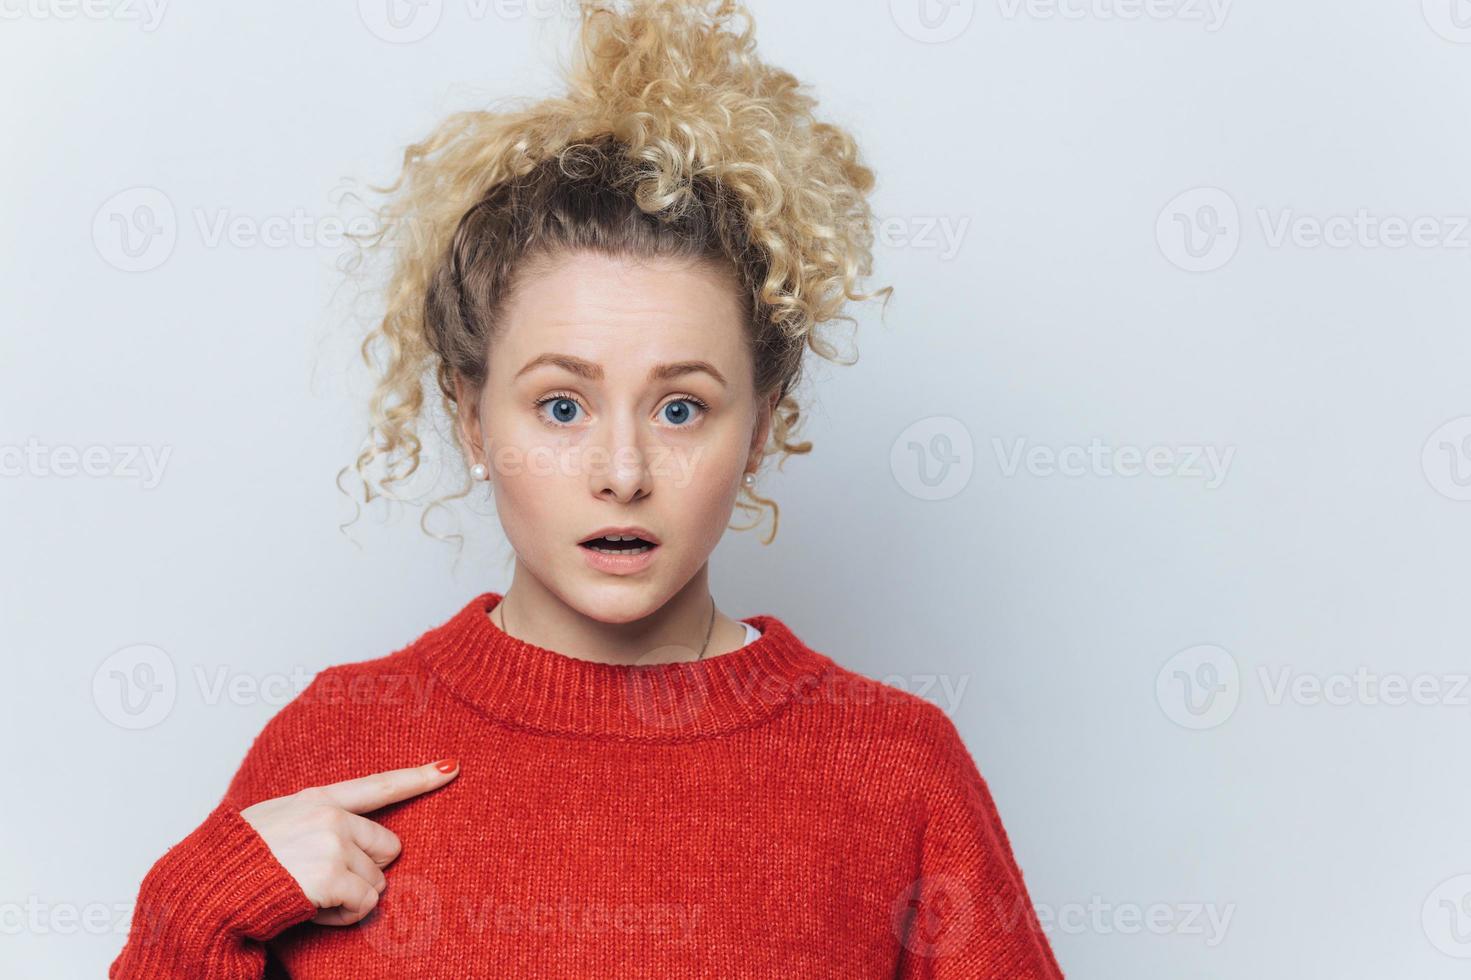 geschokte verbijsterde jonge vrouw met verbaasde uitdrukking, geeft aan op lege rode trui, adverteert met nieuwe outfit, poseert tegen witte studioachtergrond met kopieerruimte voor uw promotionele tekst. foto